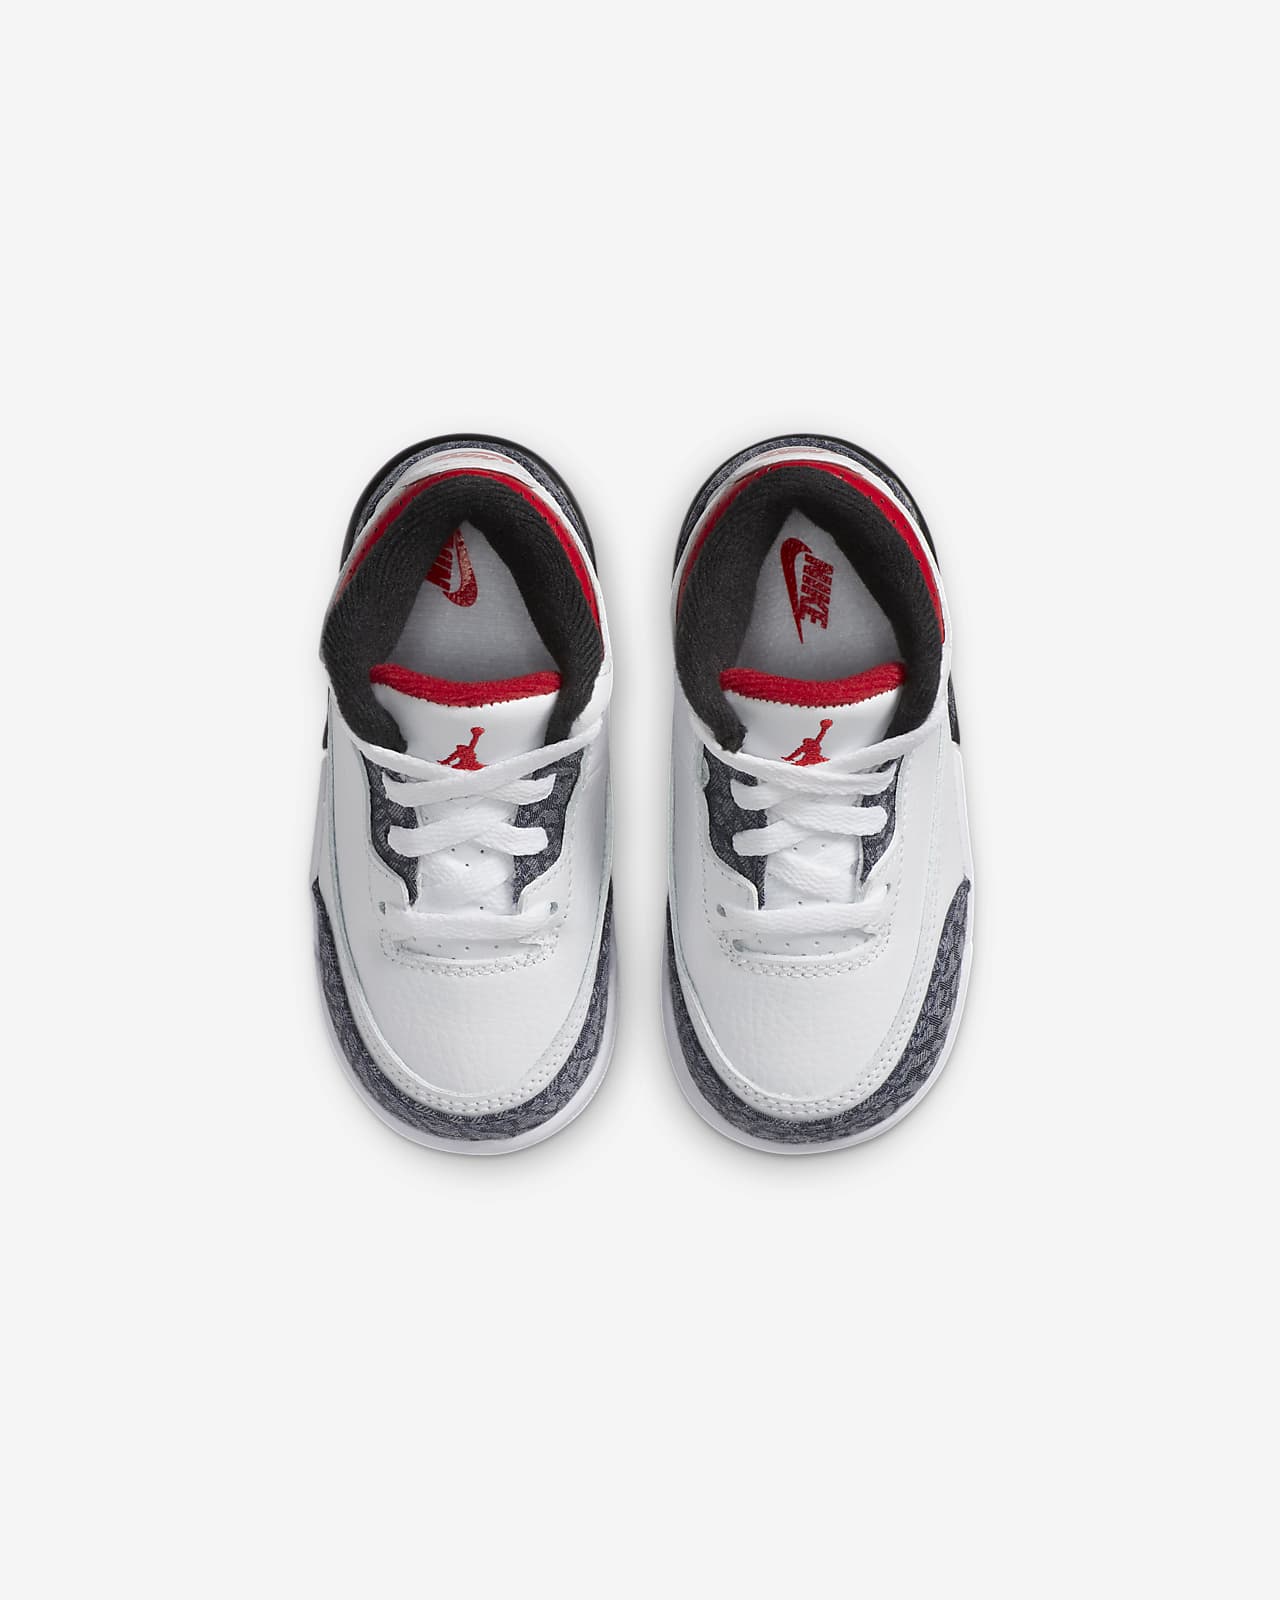 Jordan 3 Retro SE Baby and Toddler Shoe 